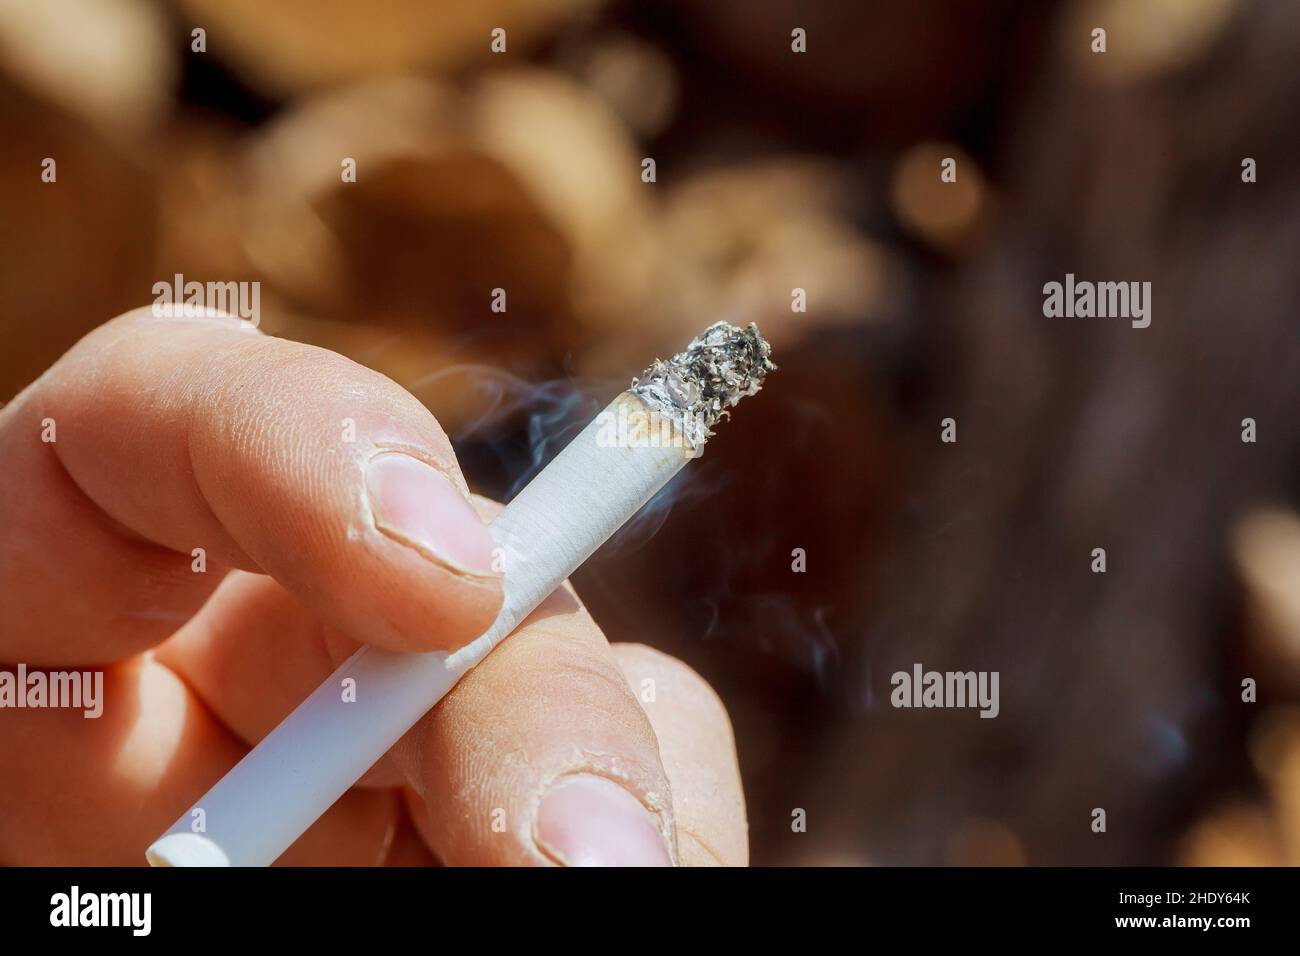 cigarette, smoking, cigarettes Stock Photo